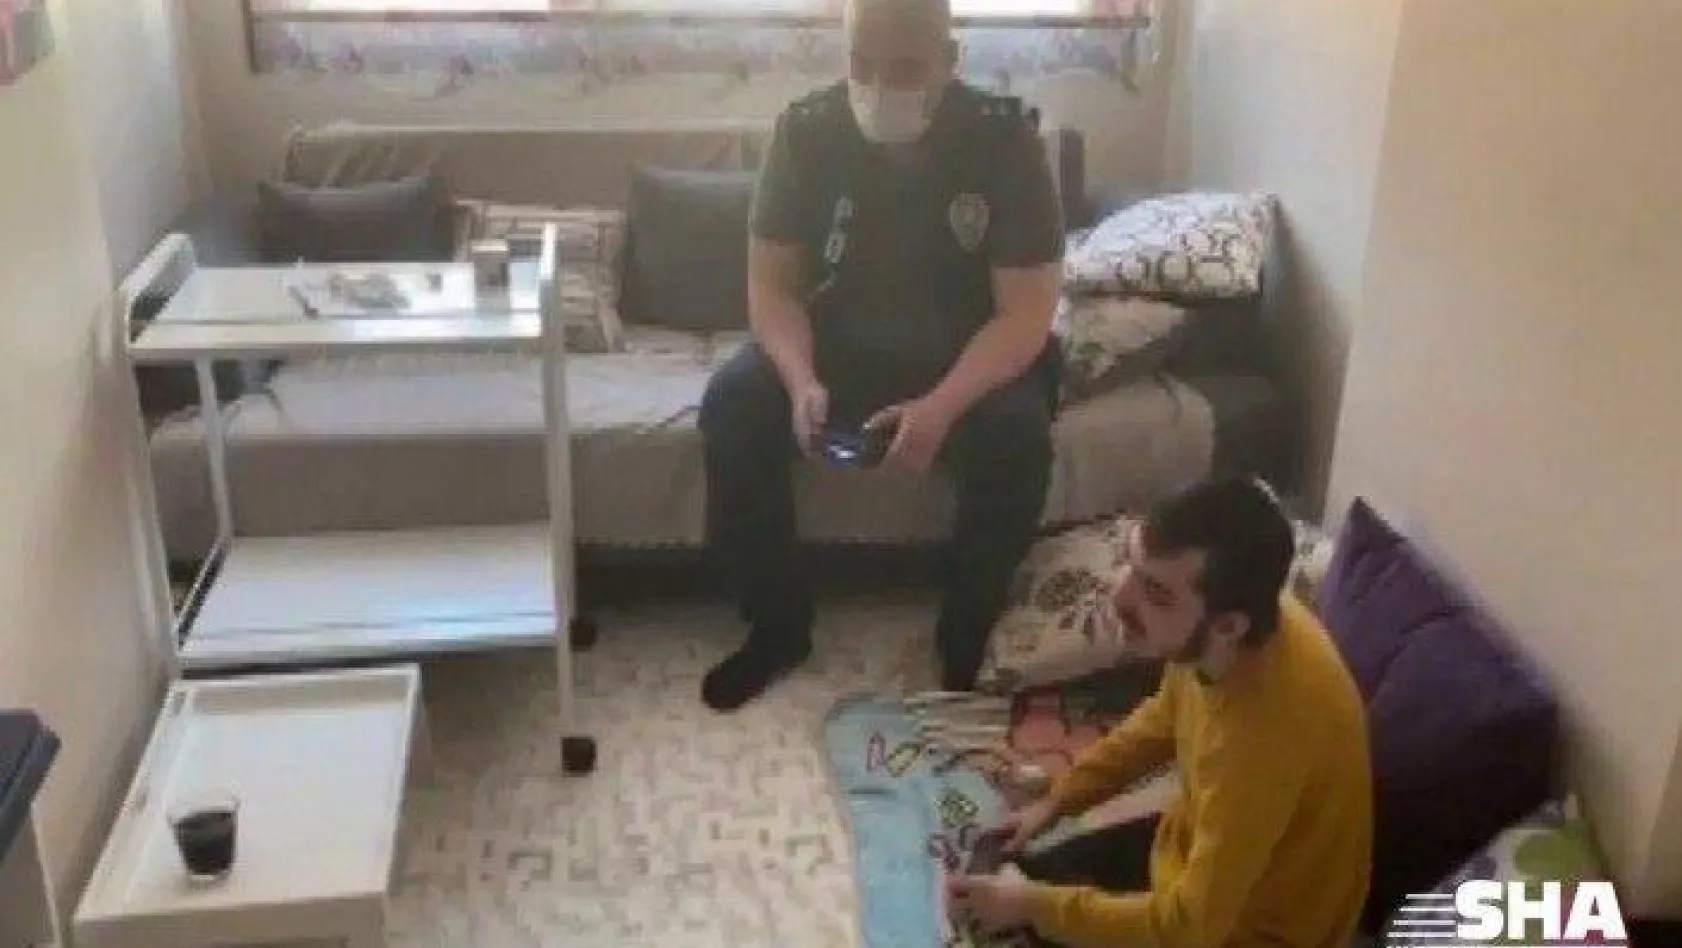 Polis engelli çocuğun playstation oynama isteğini geri çevirmedi